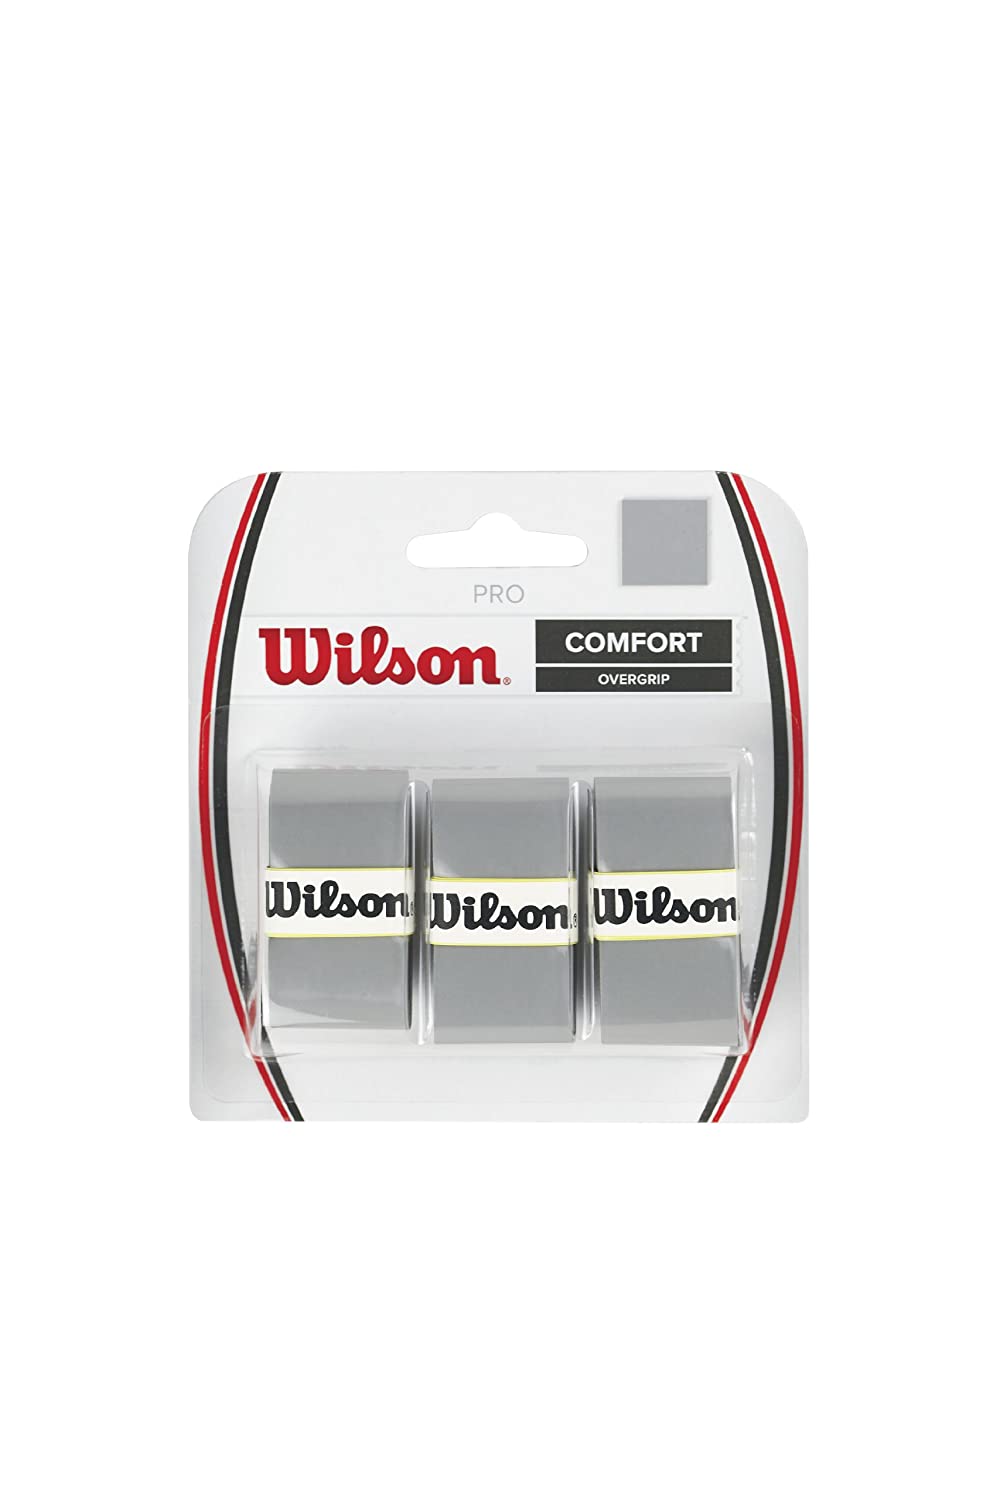 Wilson Pro Comfort Overgrip Tennis Grip (Grey) - Best Price online Prokicksports.com